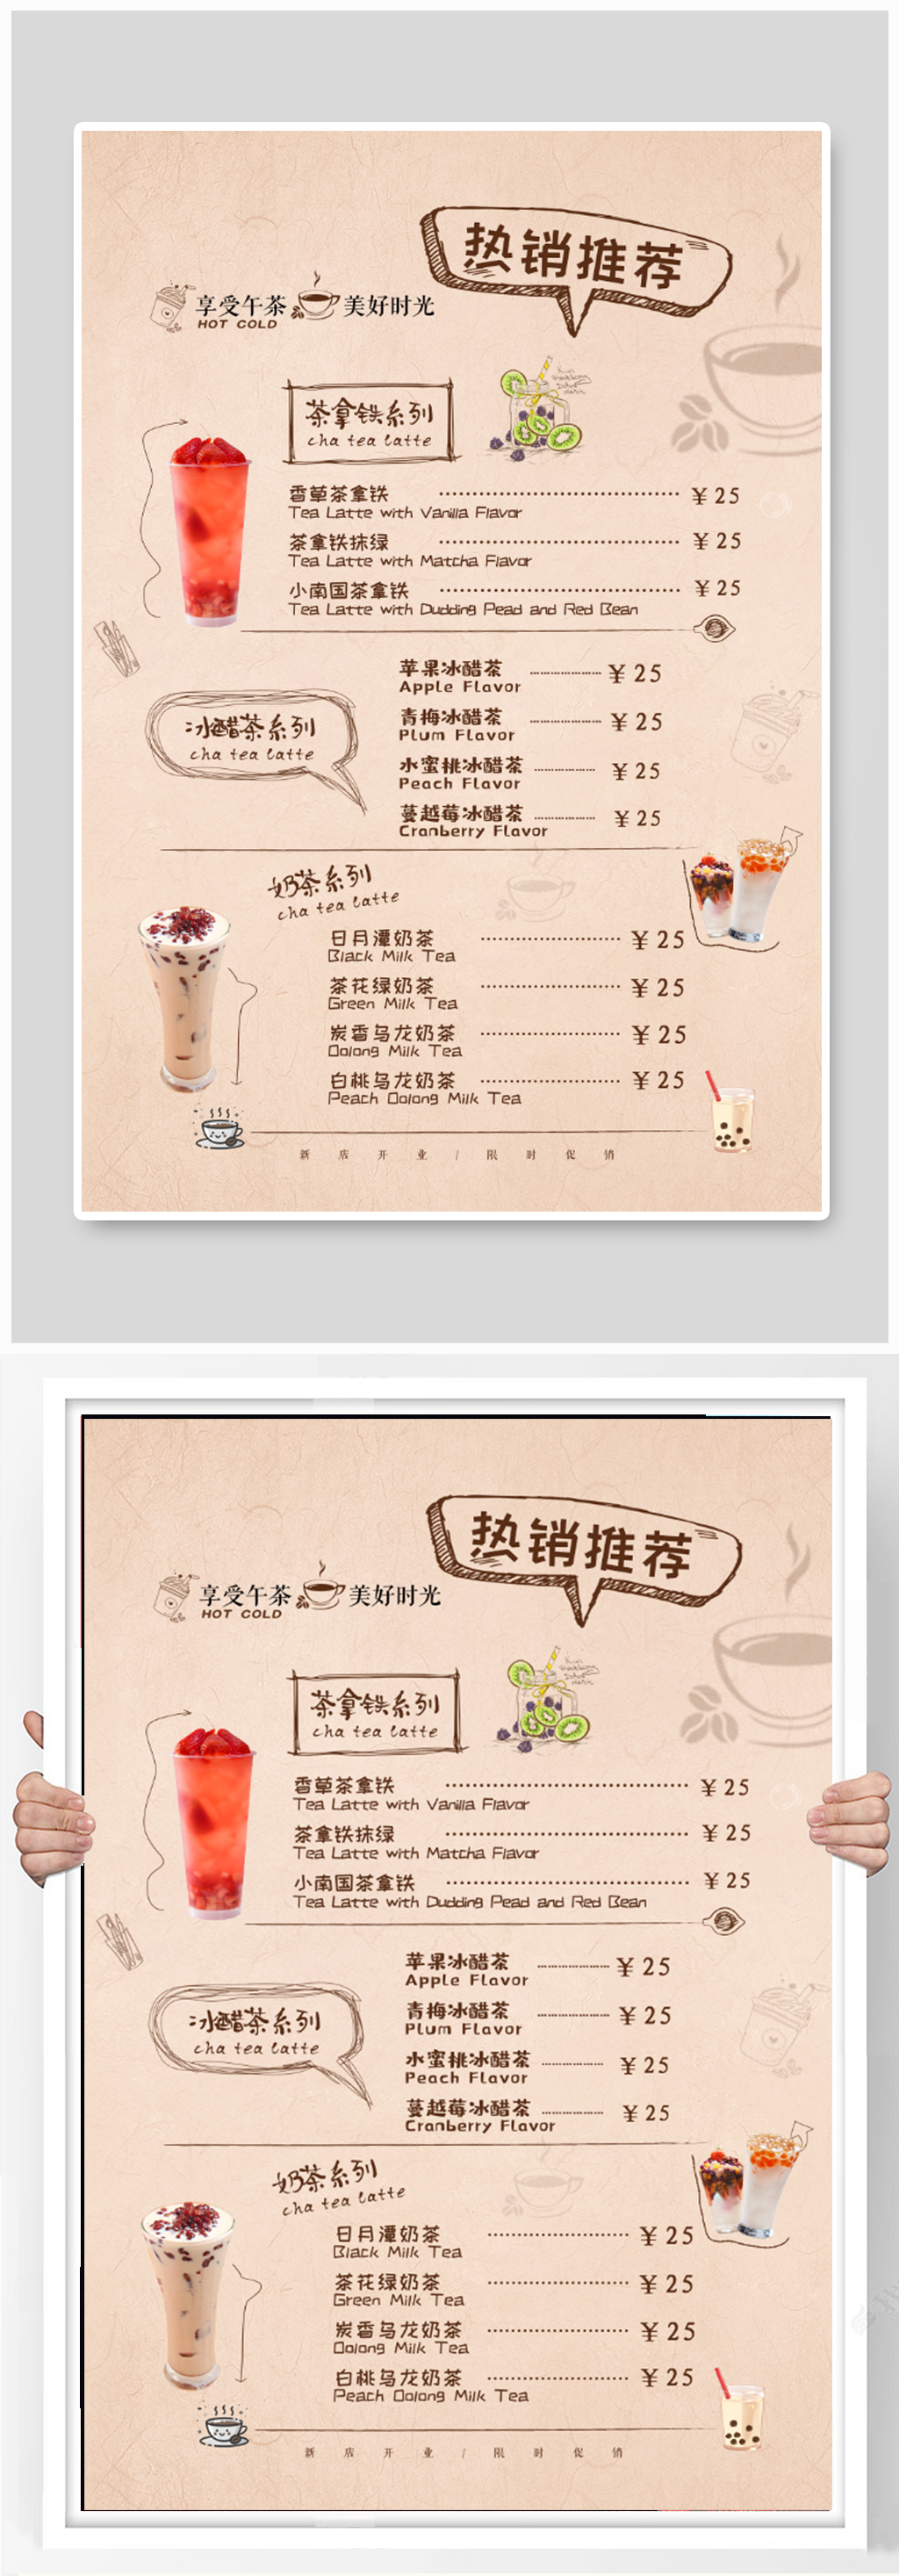 奶茶店广告菜单图片